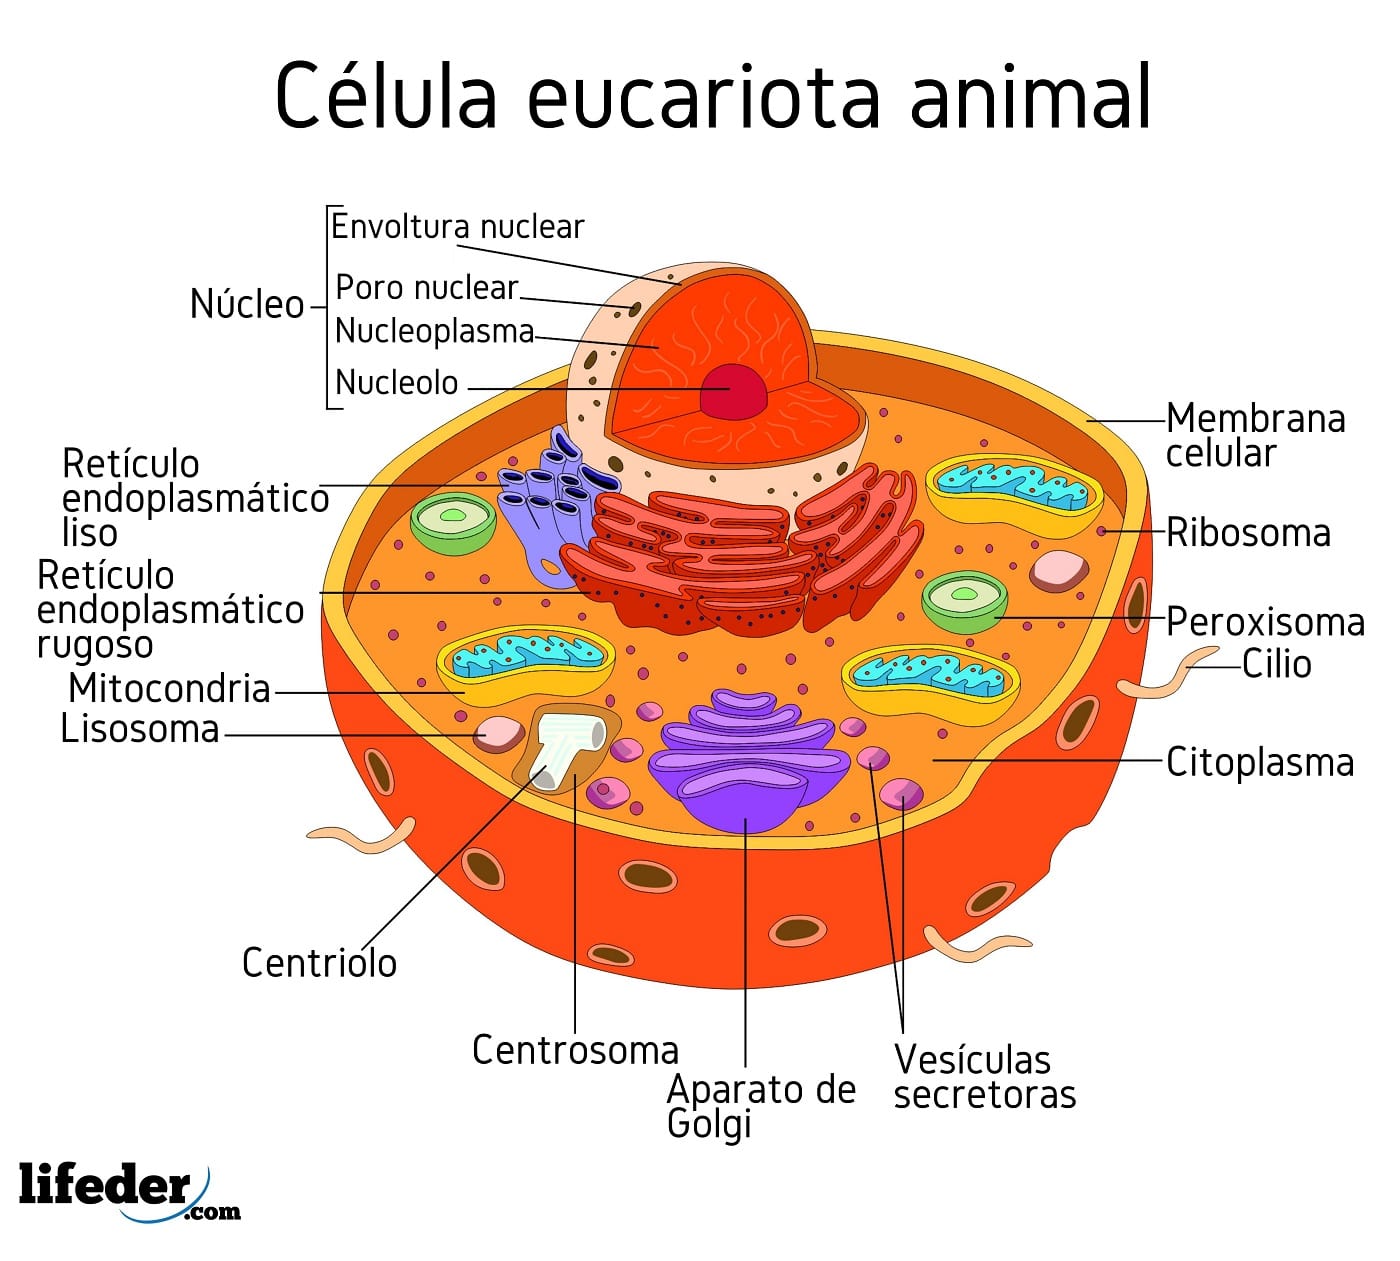 transatlántico promedio Conjugado Célula eucariota: características, partes, funciones, tipos